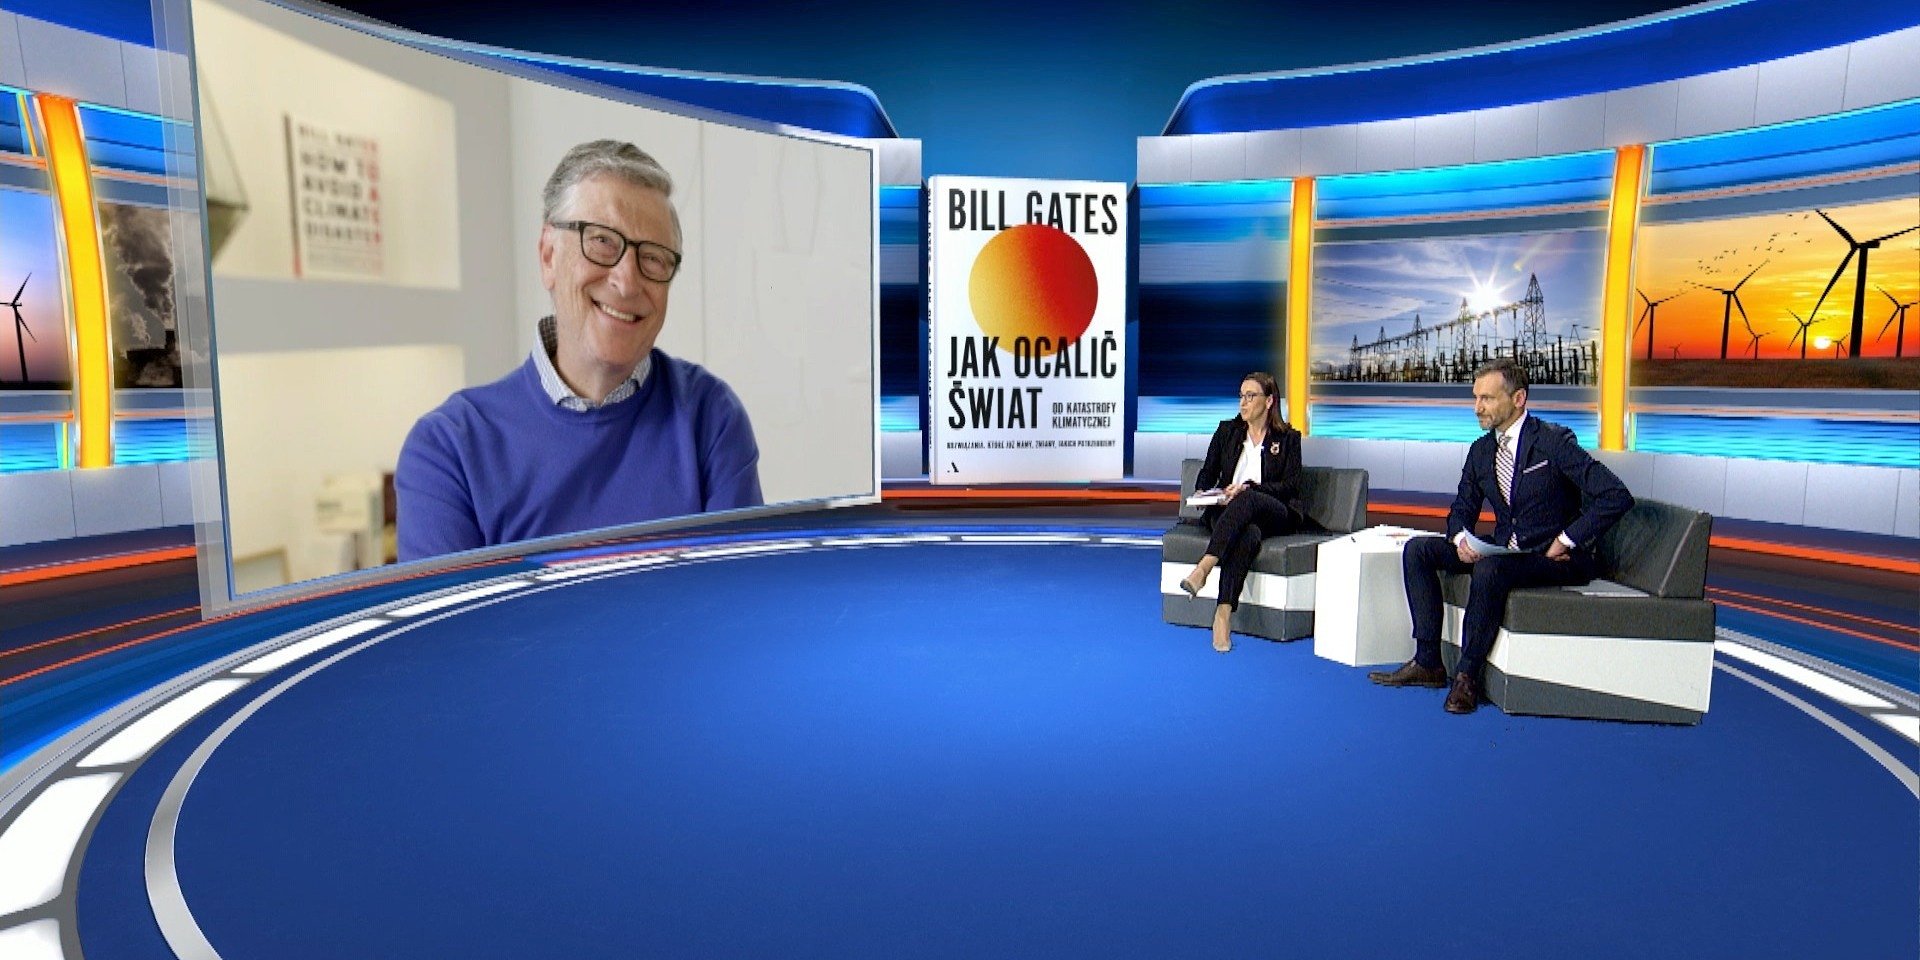 Ekskluzywny wywiad z Billem Gatesem już dostępny online! Można obejrzeć go zupełnie za darmo - gdzie?